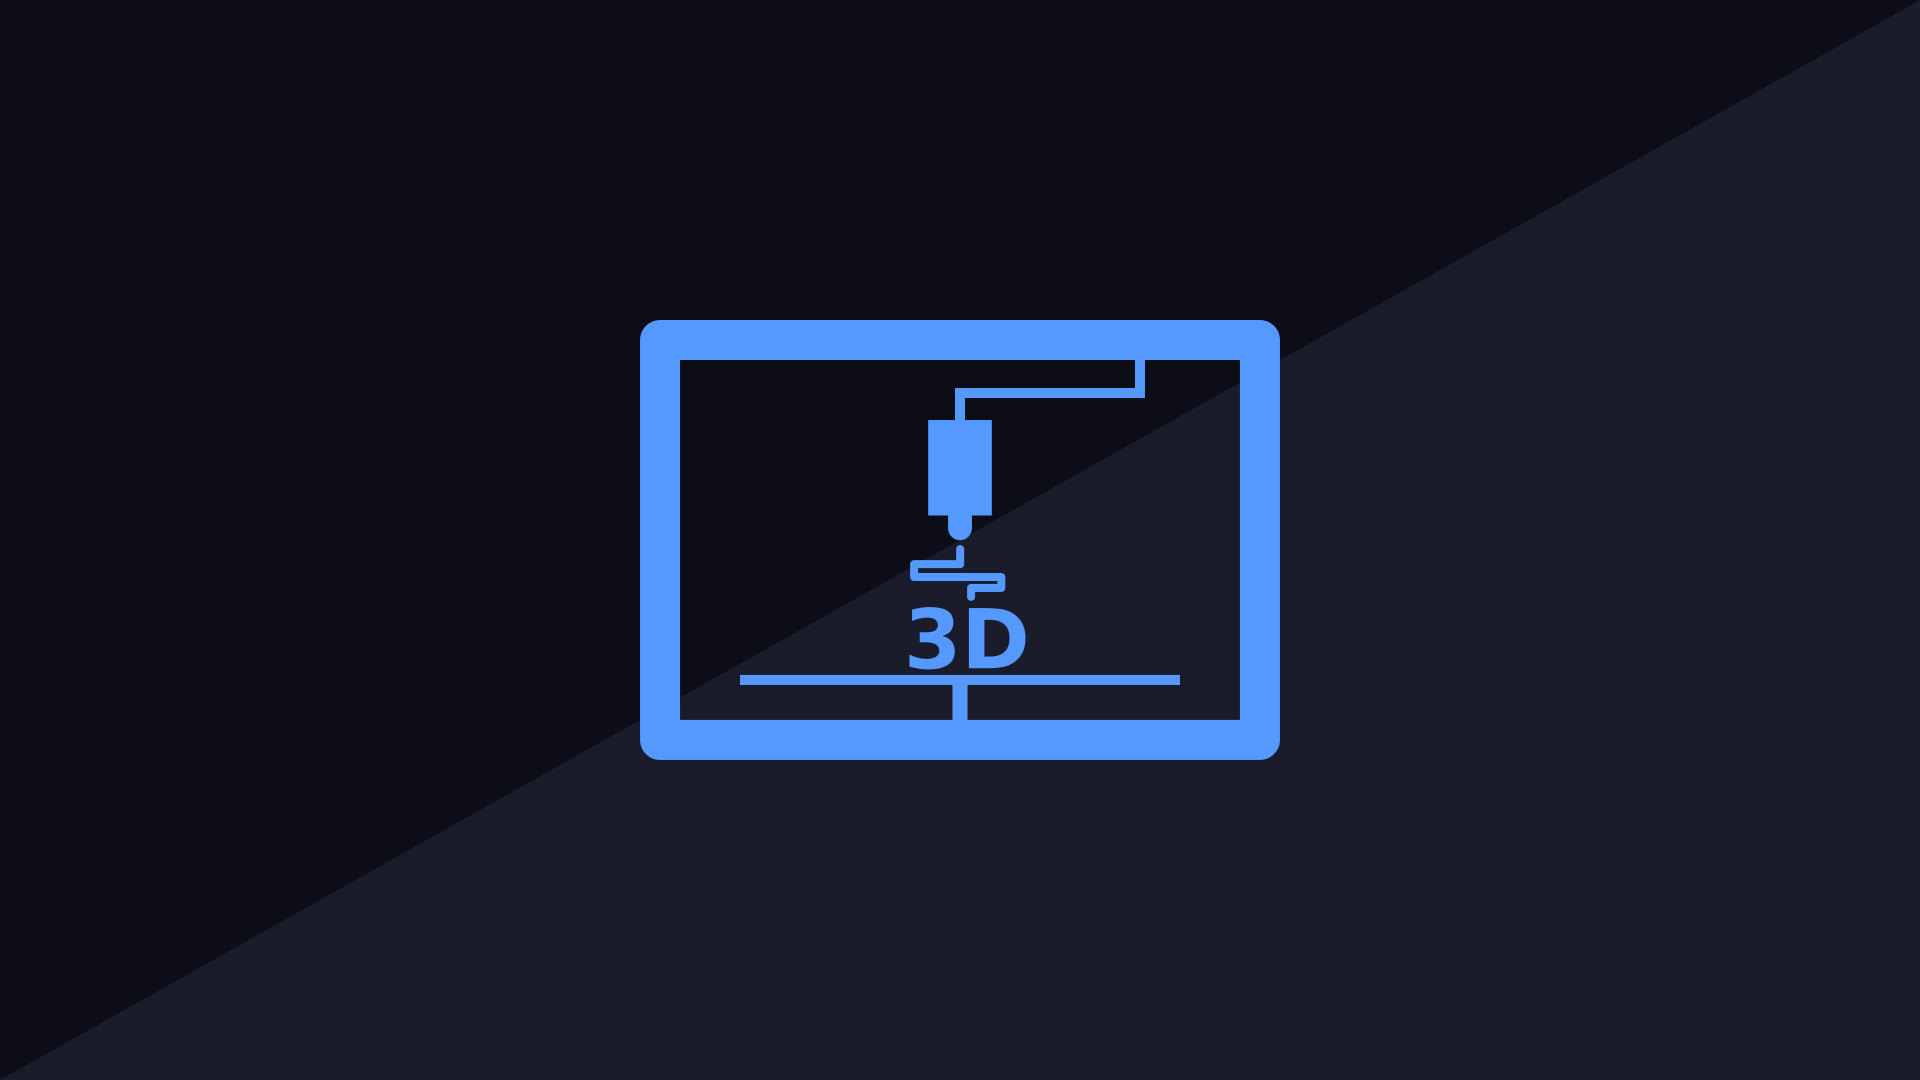 Nowa metoda druku 3D jest w pełni trójwymiarowa i pozwala na dynamiczne zmiany elastyczności drukowanego obiektu